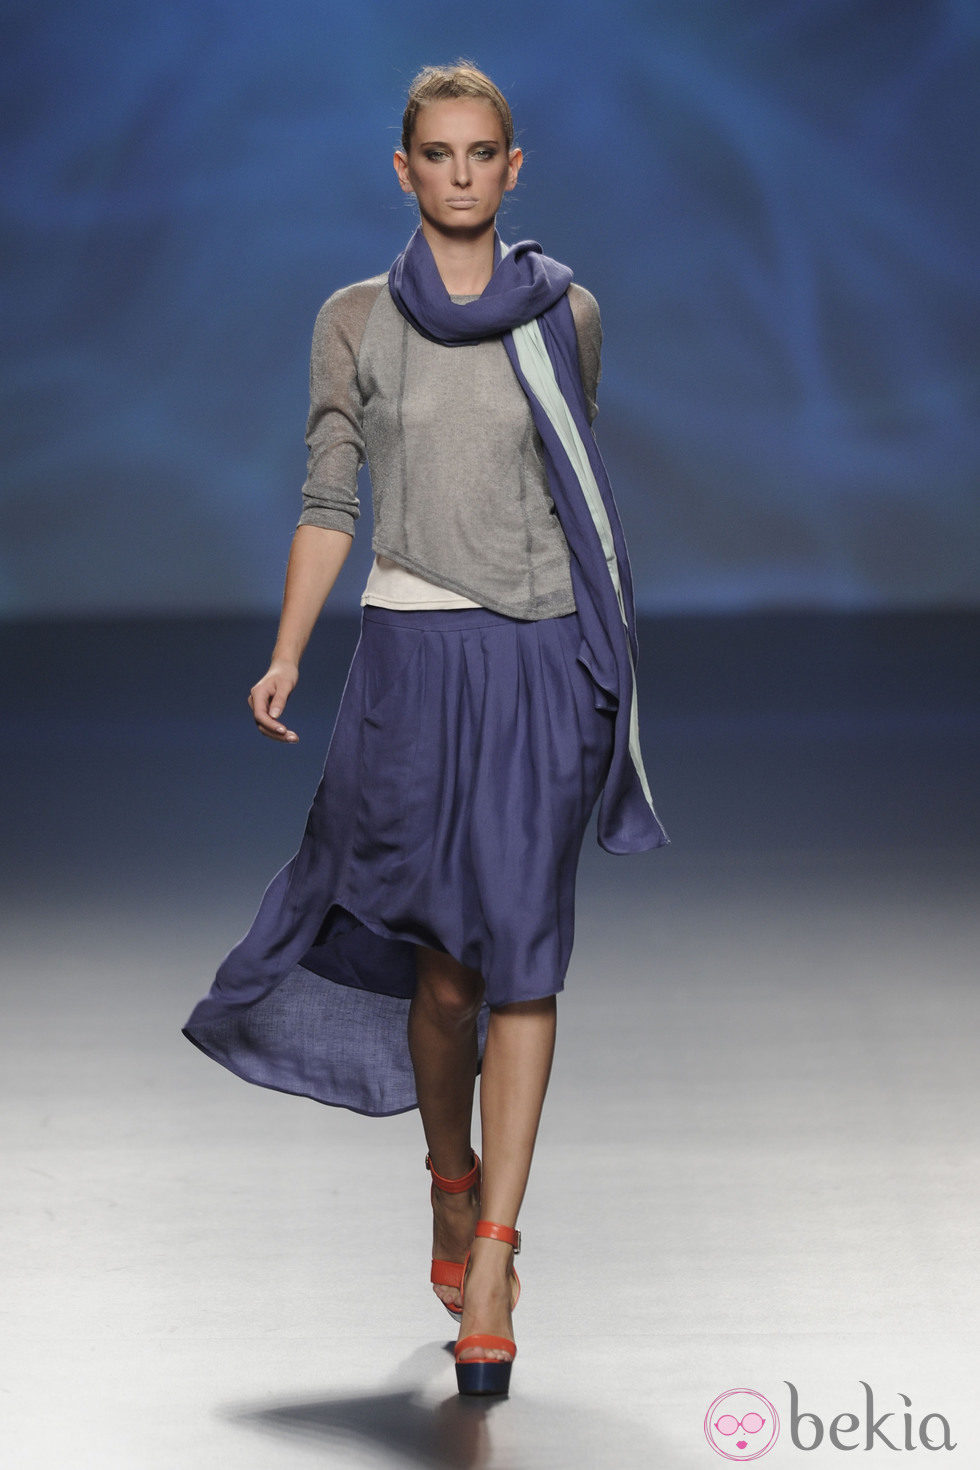 Falda azul marino con camiseta gris, fular azul marino y turquesa de la colección primavera/verano 2013 de Sara Coleman